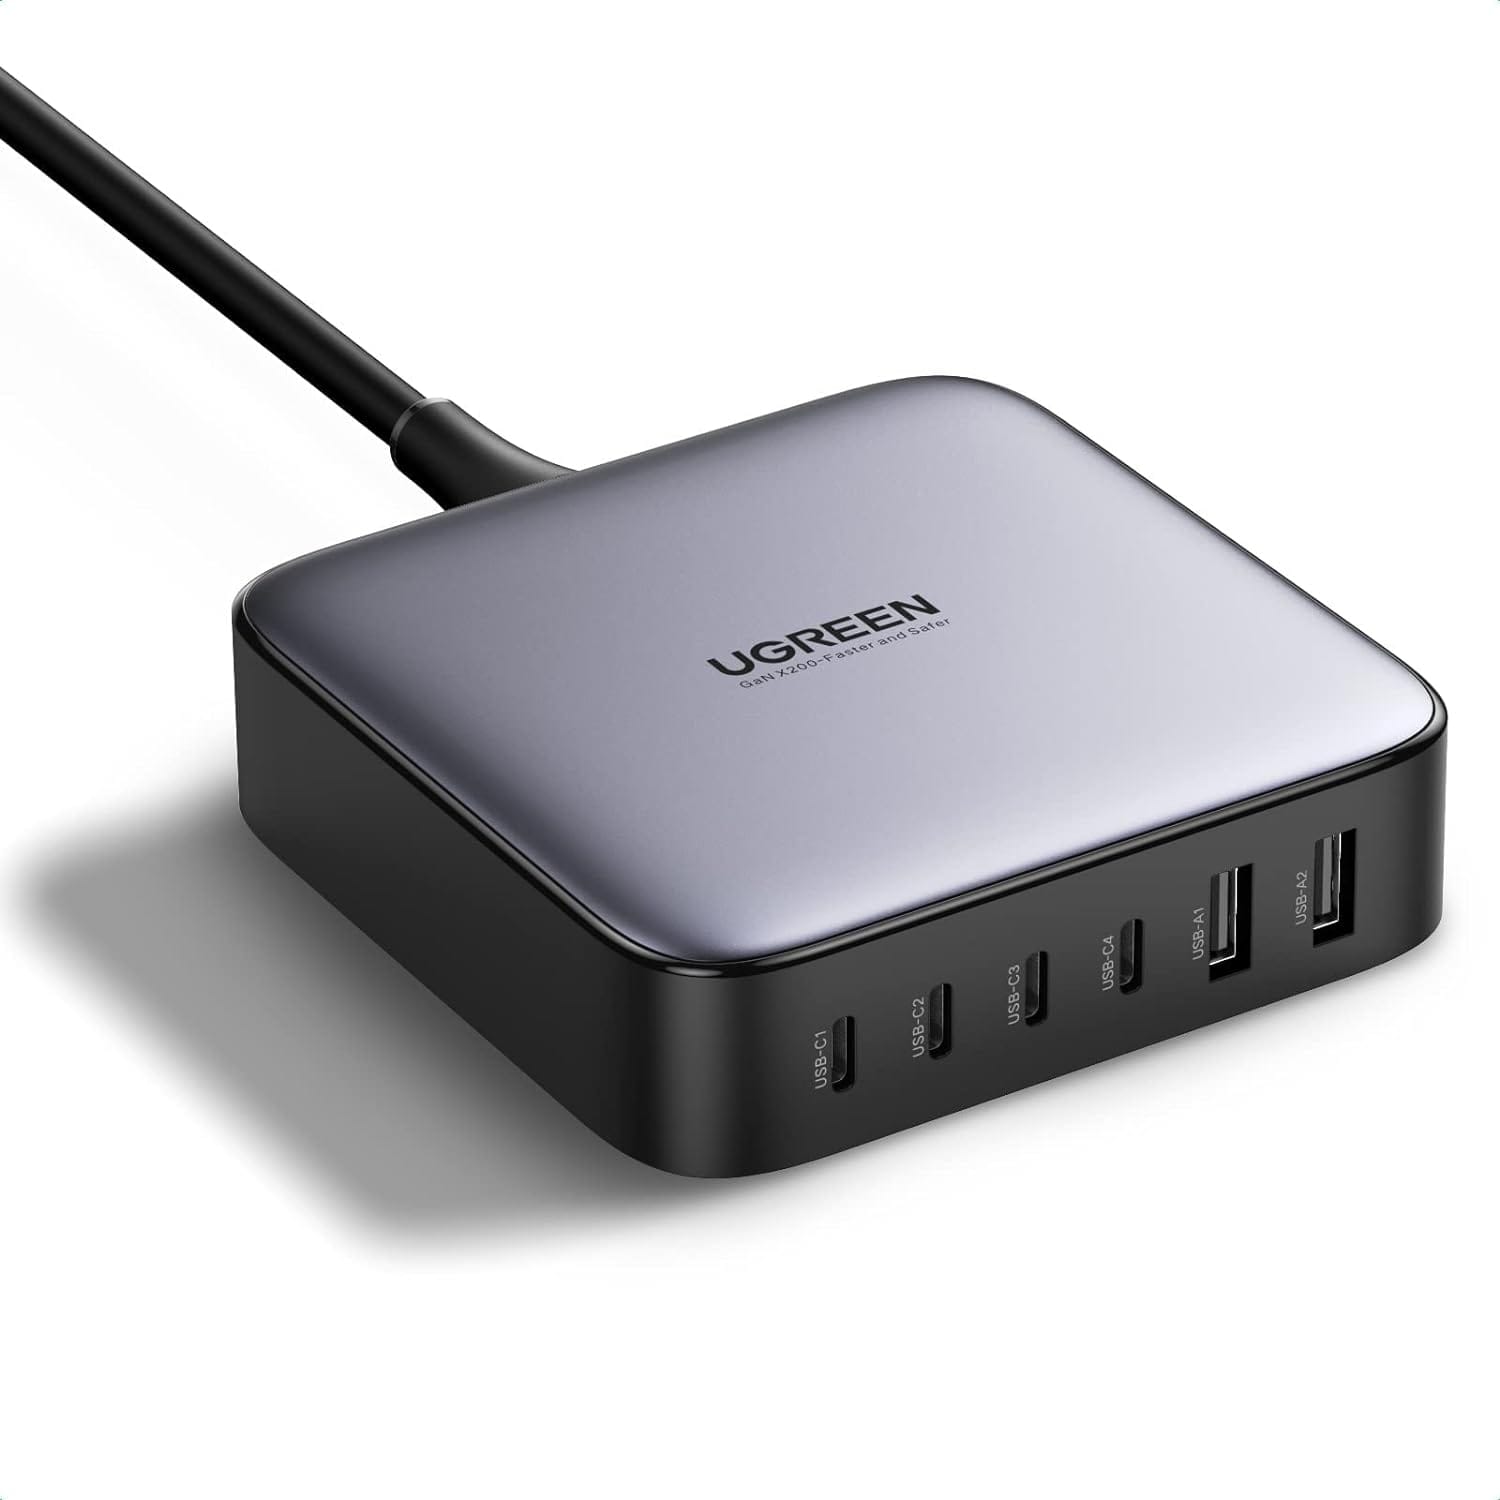 UGREEN、USB急速充電器を割引価格で提供